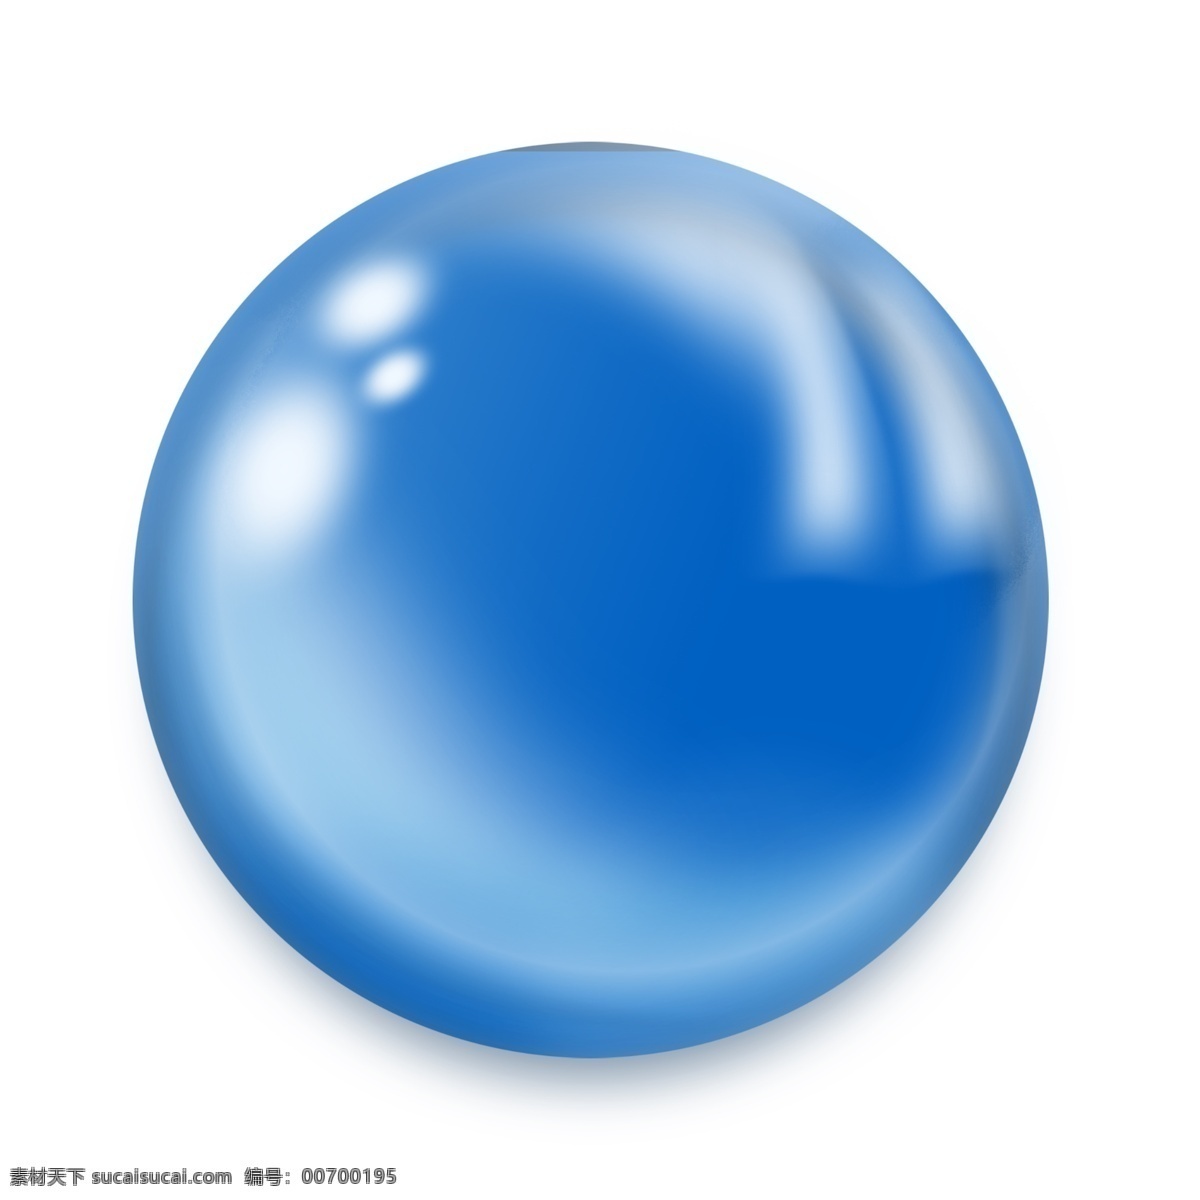 圆形 水球 水珠 插画 手绘蓝色水球 蓝色水珠插画 晶莹剔透 卡通水珠 精美的水珠 水珠插画